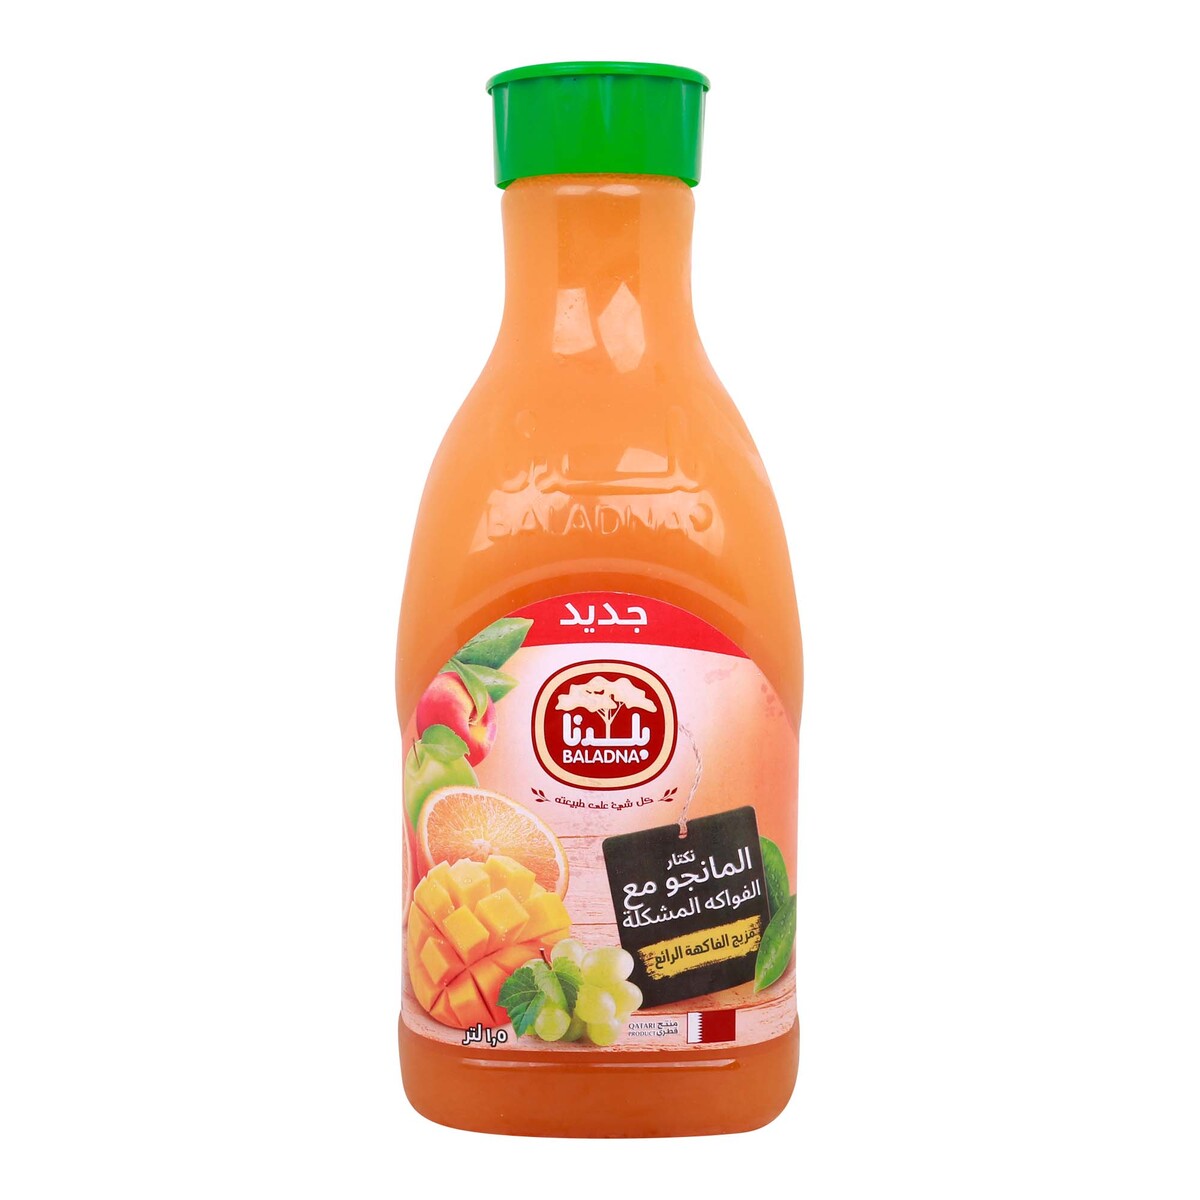 Baladna Mango Nectar with Mixed Fruit Juice 1.5 Litre